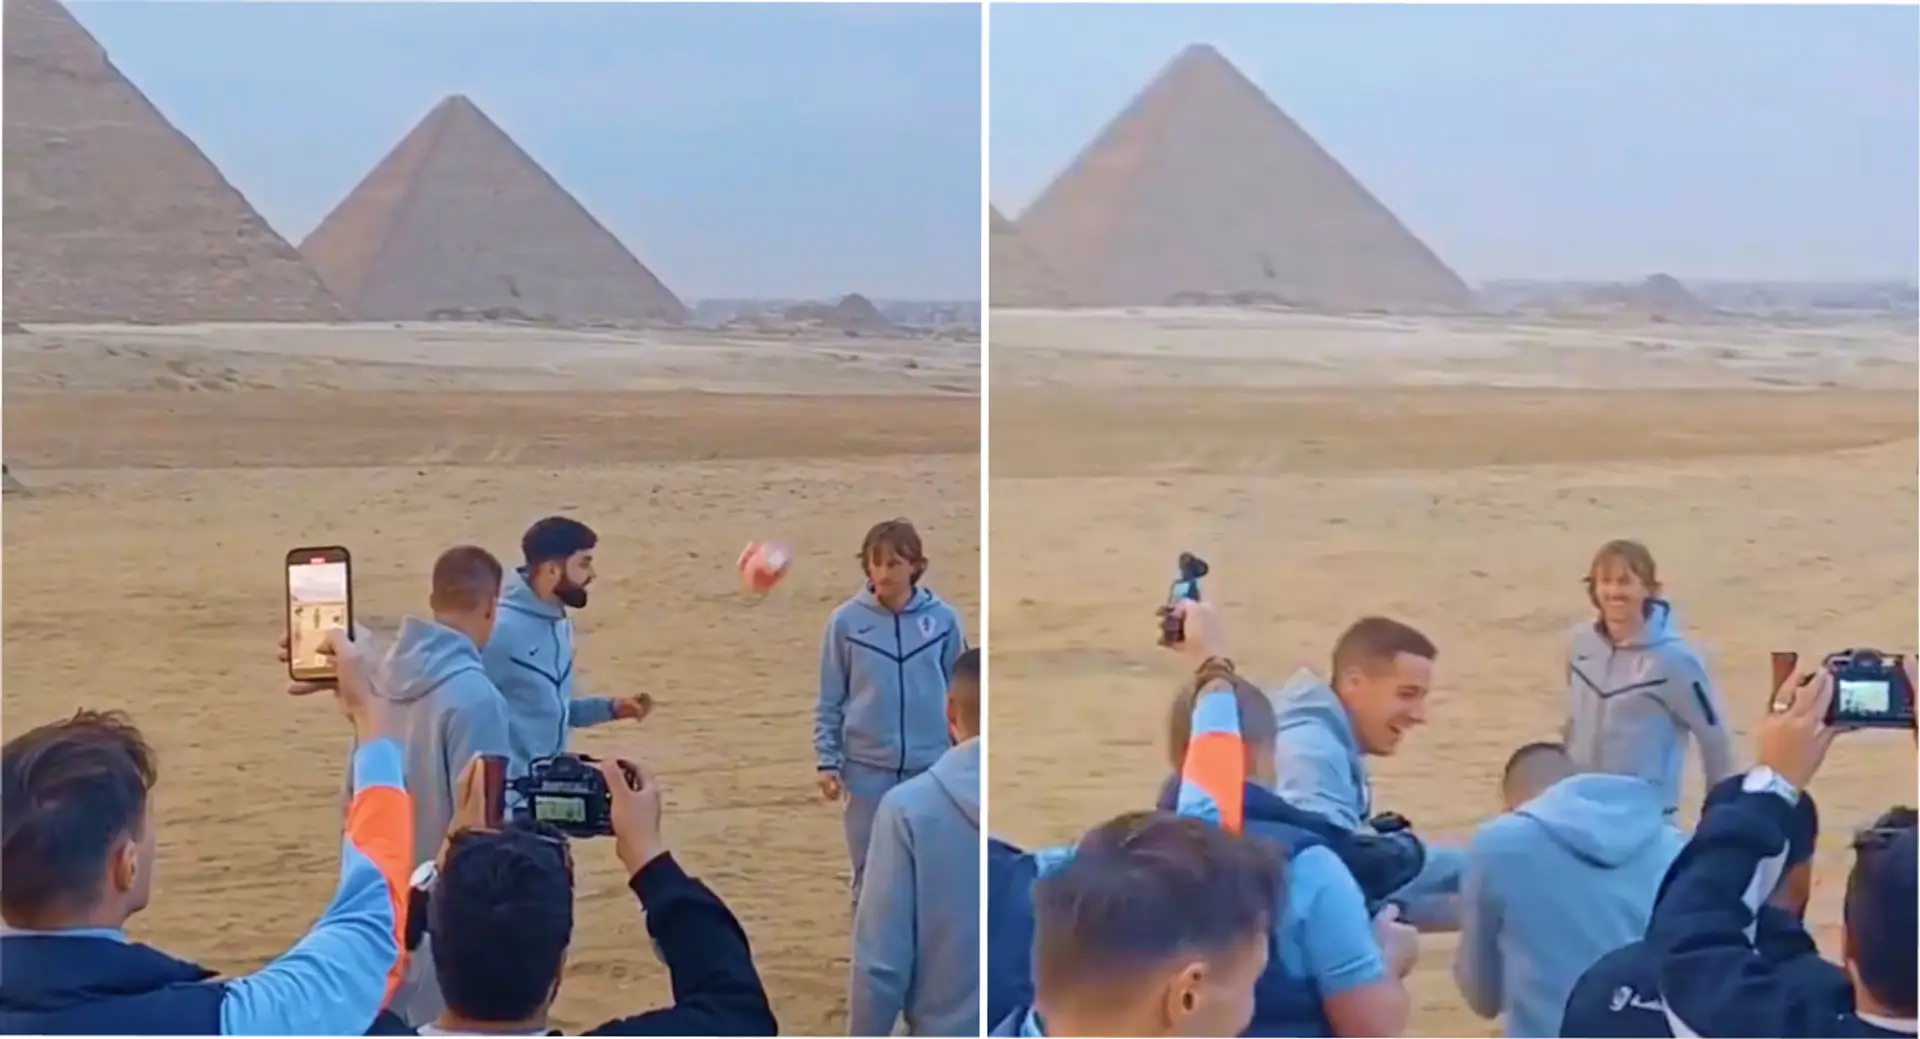 Luka Modric jongle tranquillement avec le ballon devant les pyramides de Gizeh avec ses coéquipiers croates - filmé